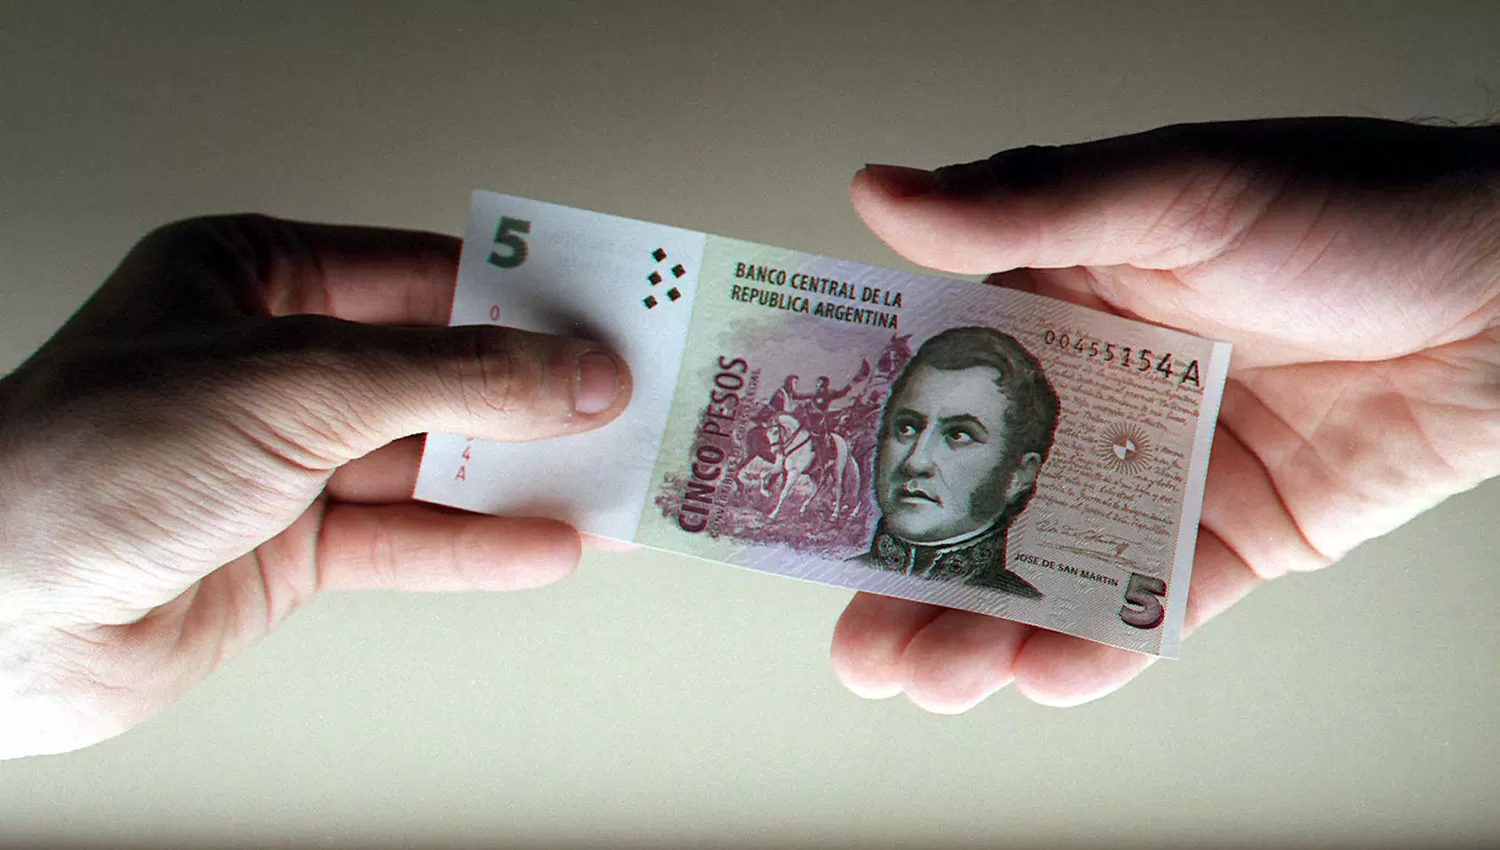 La Cámara de Comercio pide extender la circulación de los billetes de $5